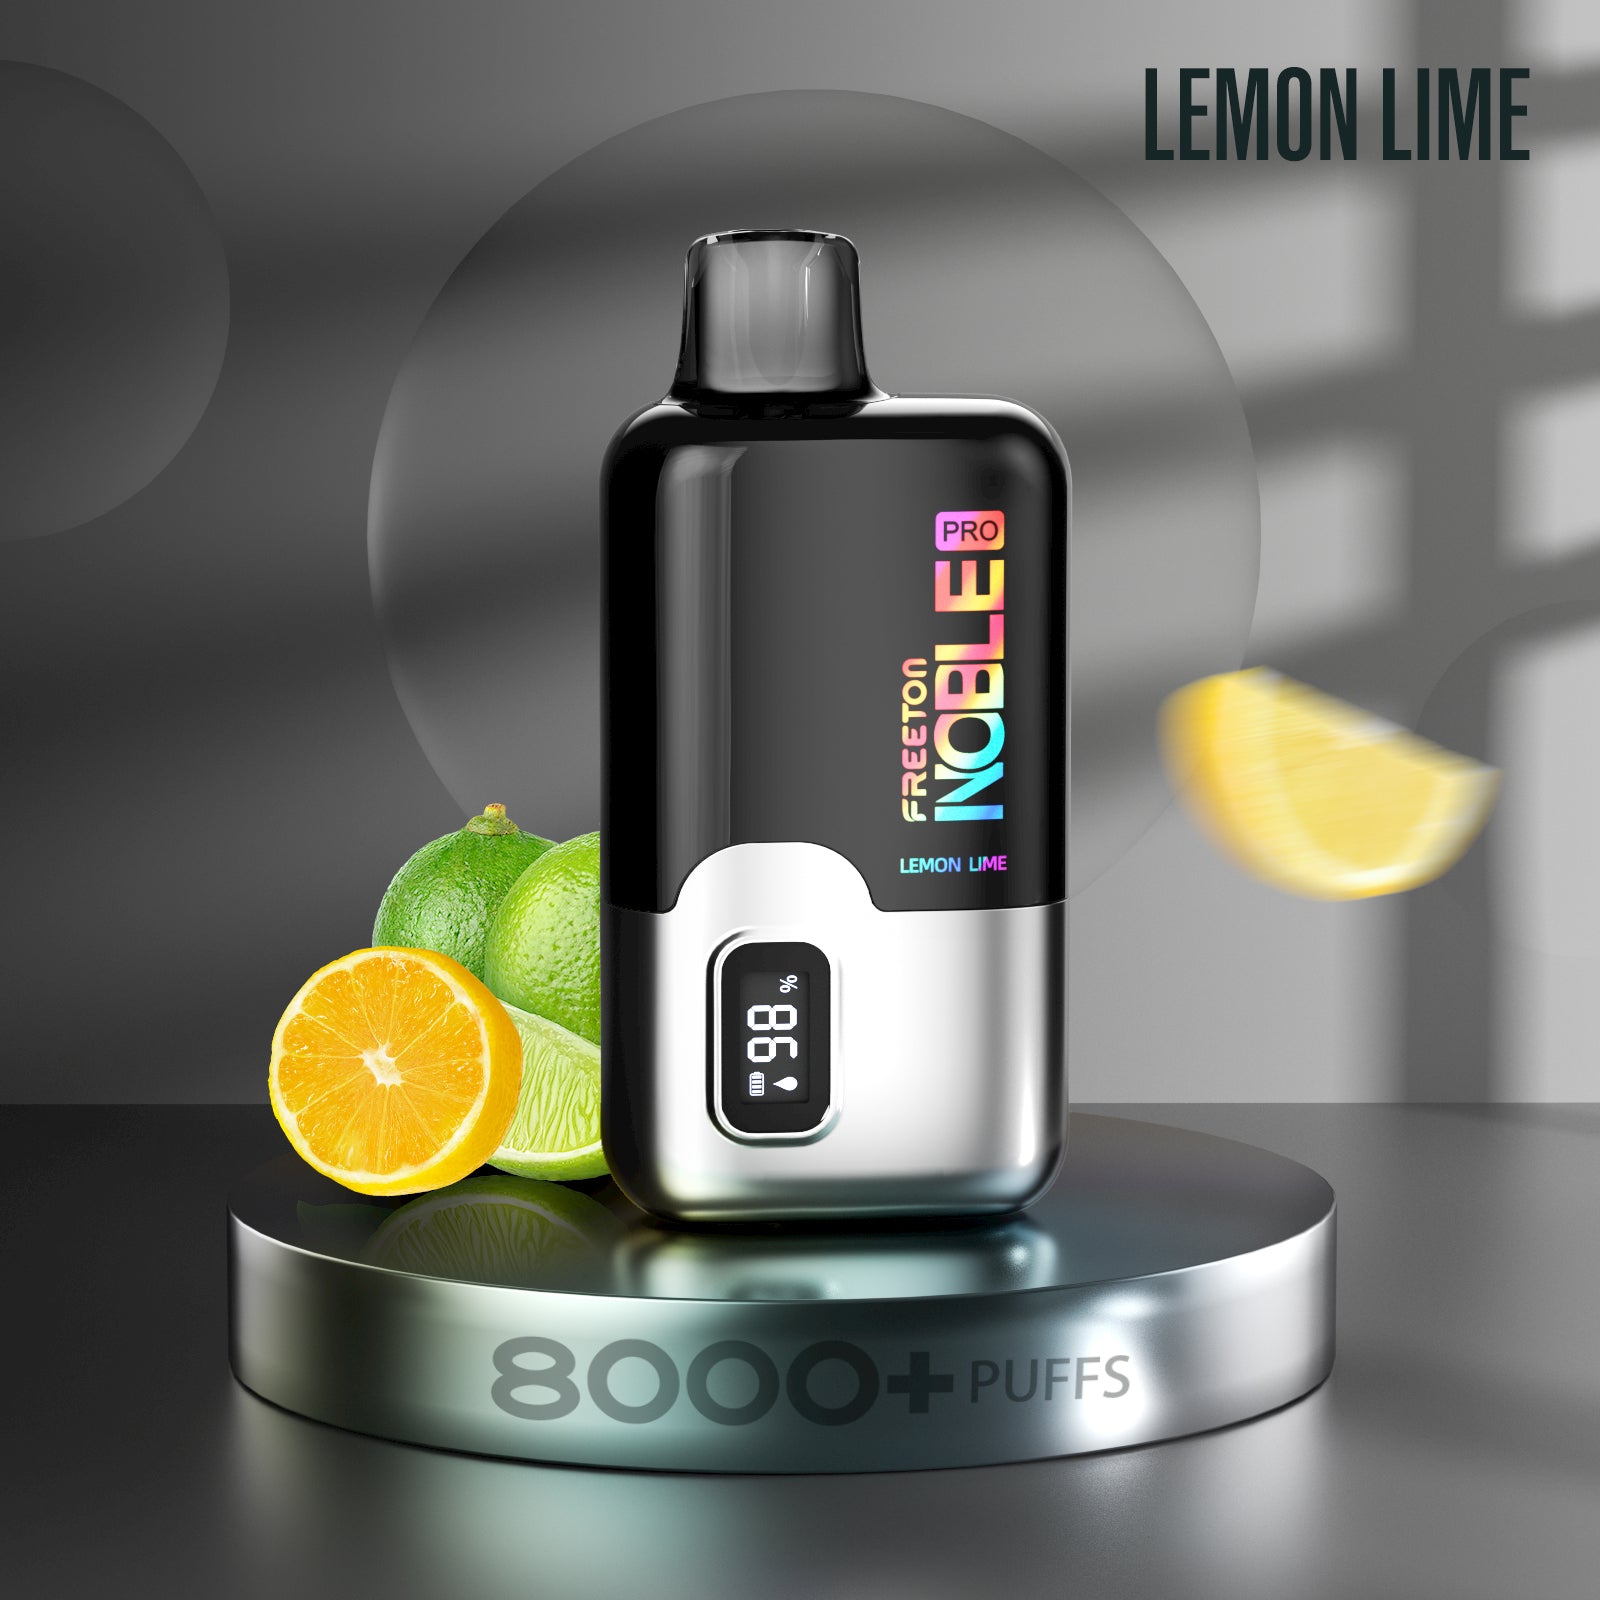 Freeton Noble Pro Lemon Lime 8000+ Puffs